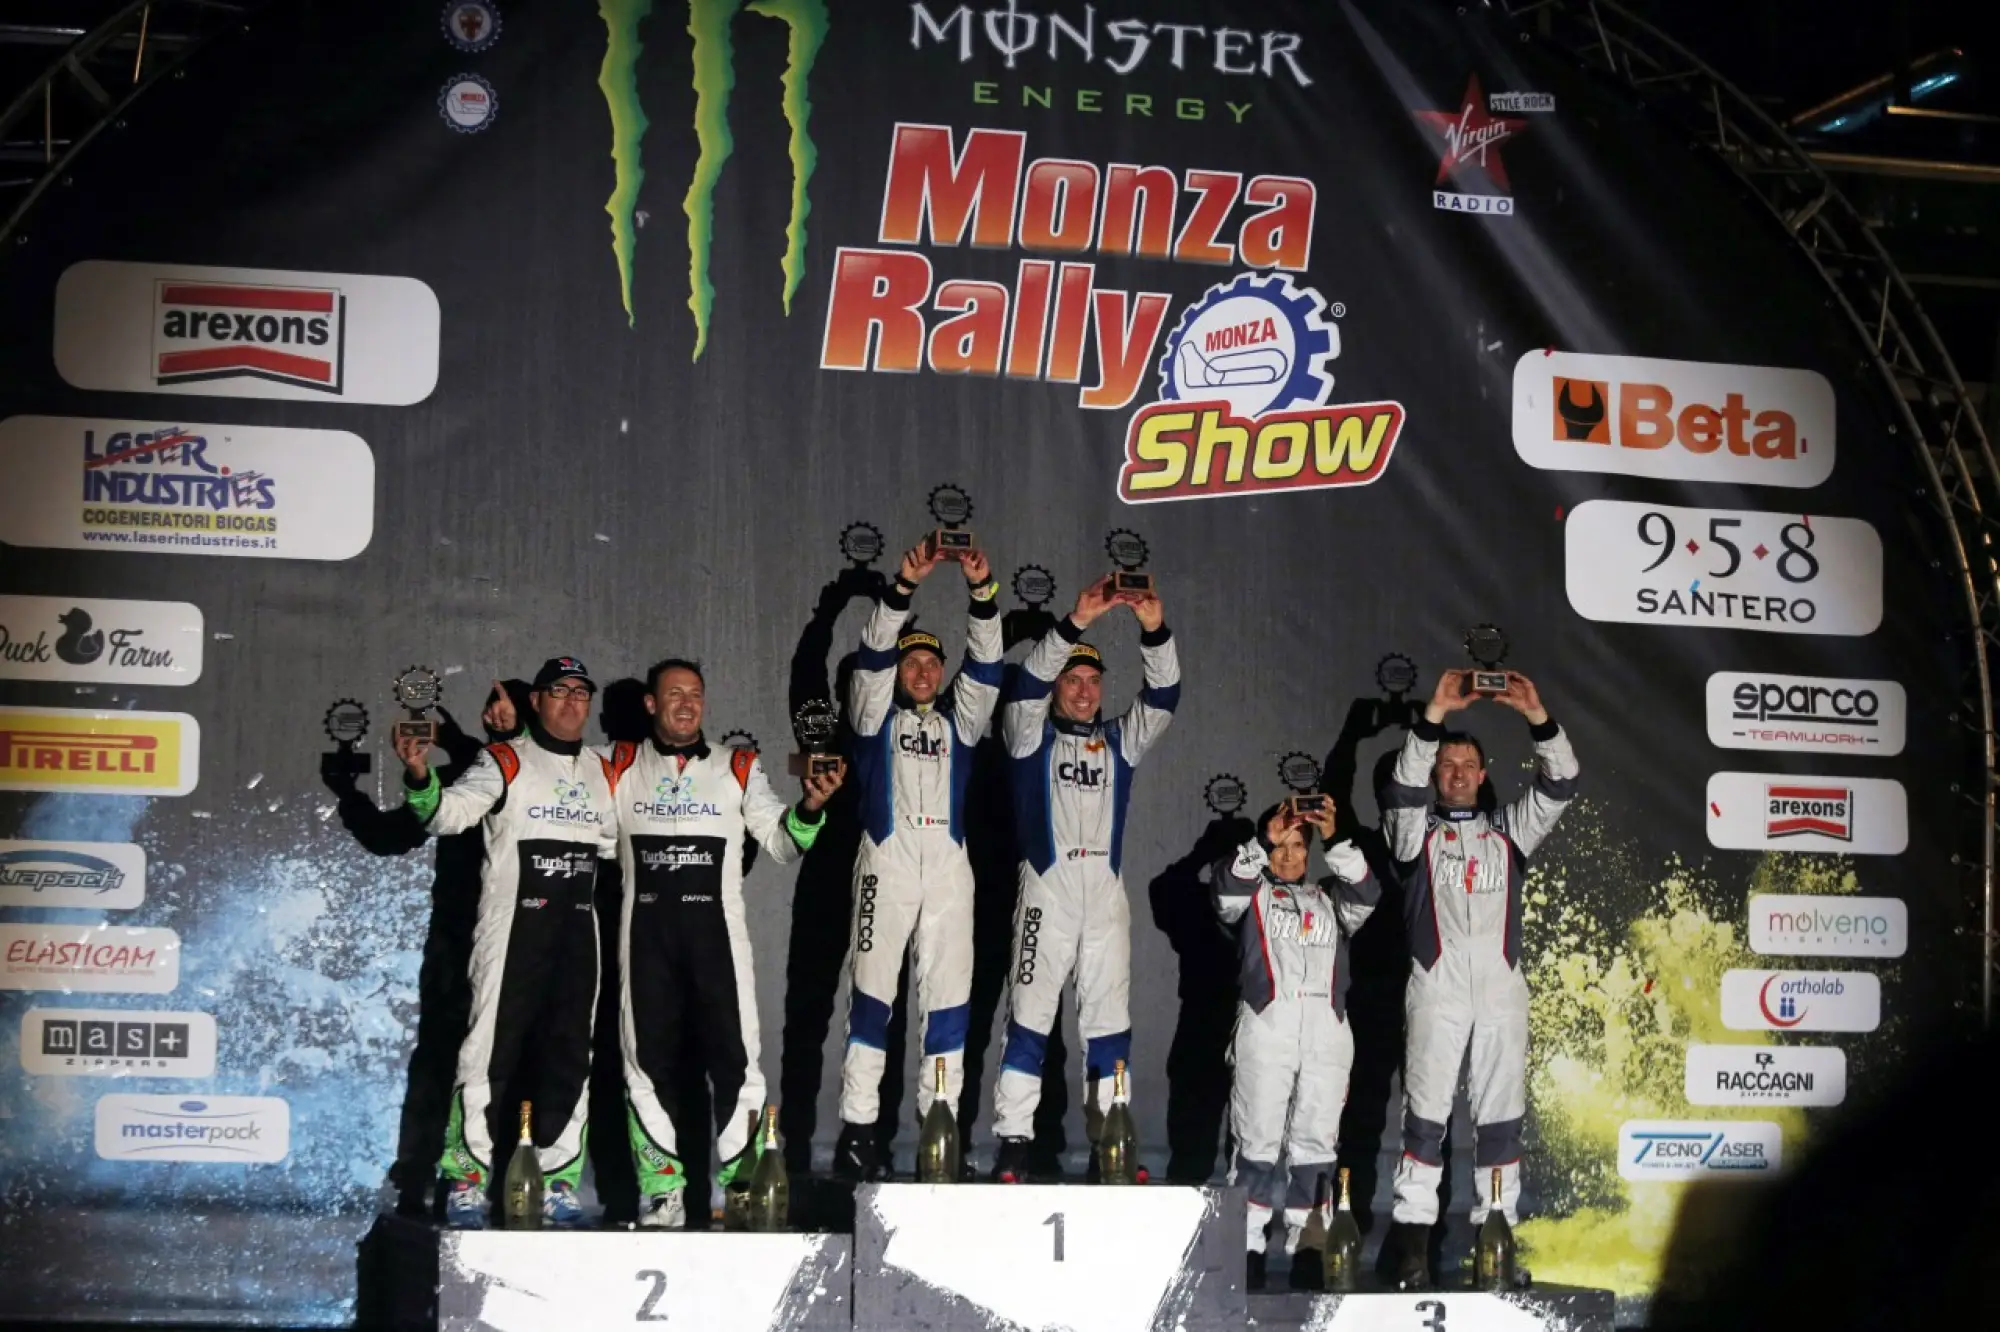 Monza Rally Show -  27 - 30 novembre 2014 - 545